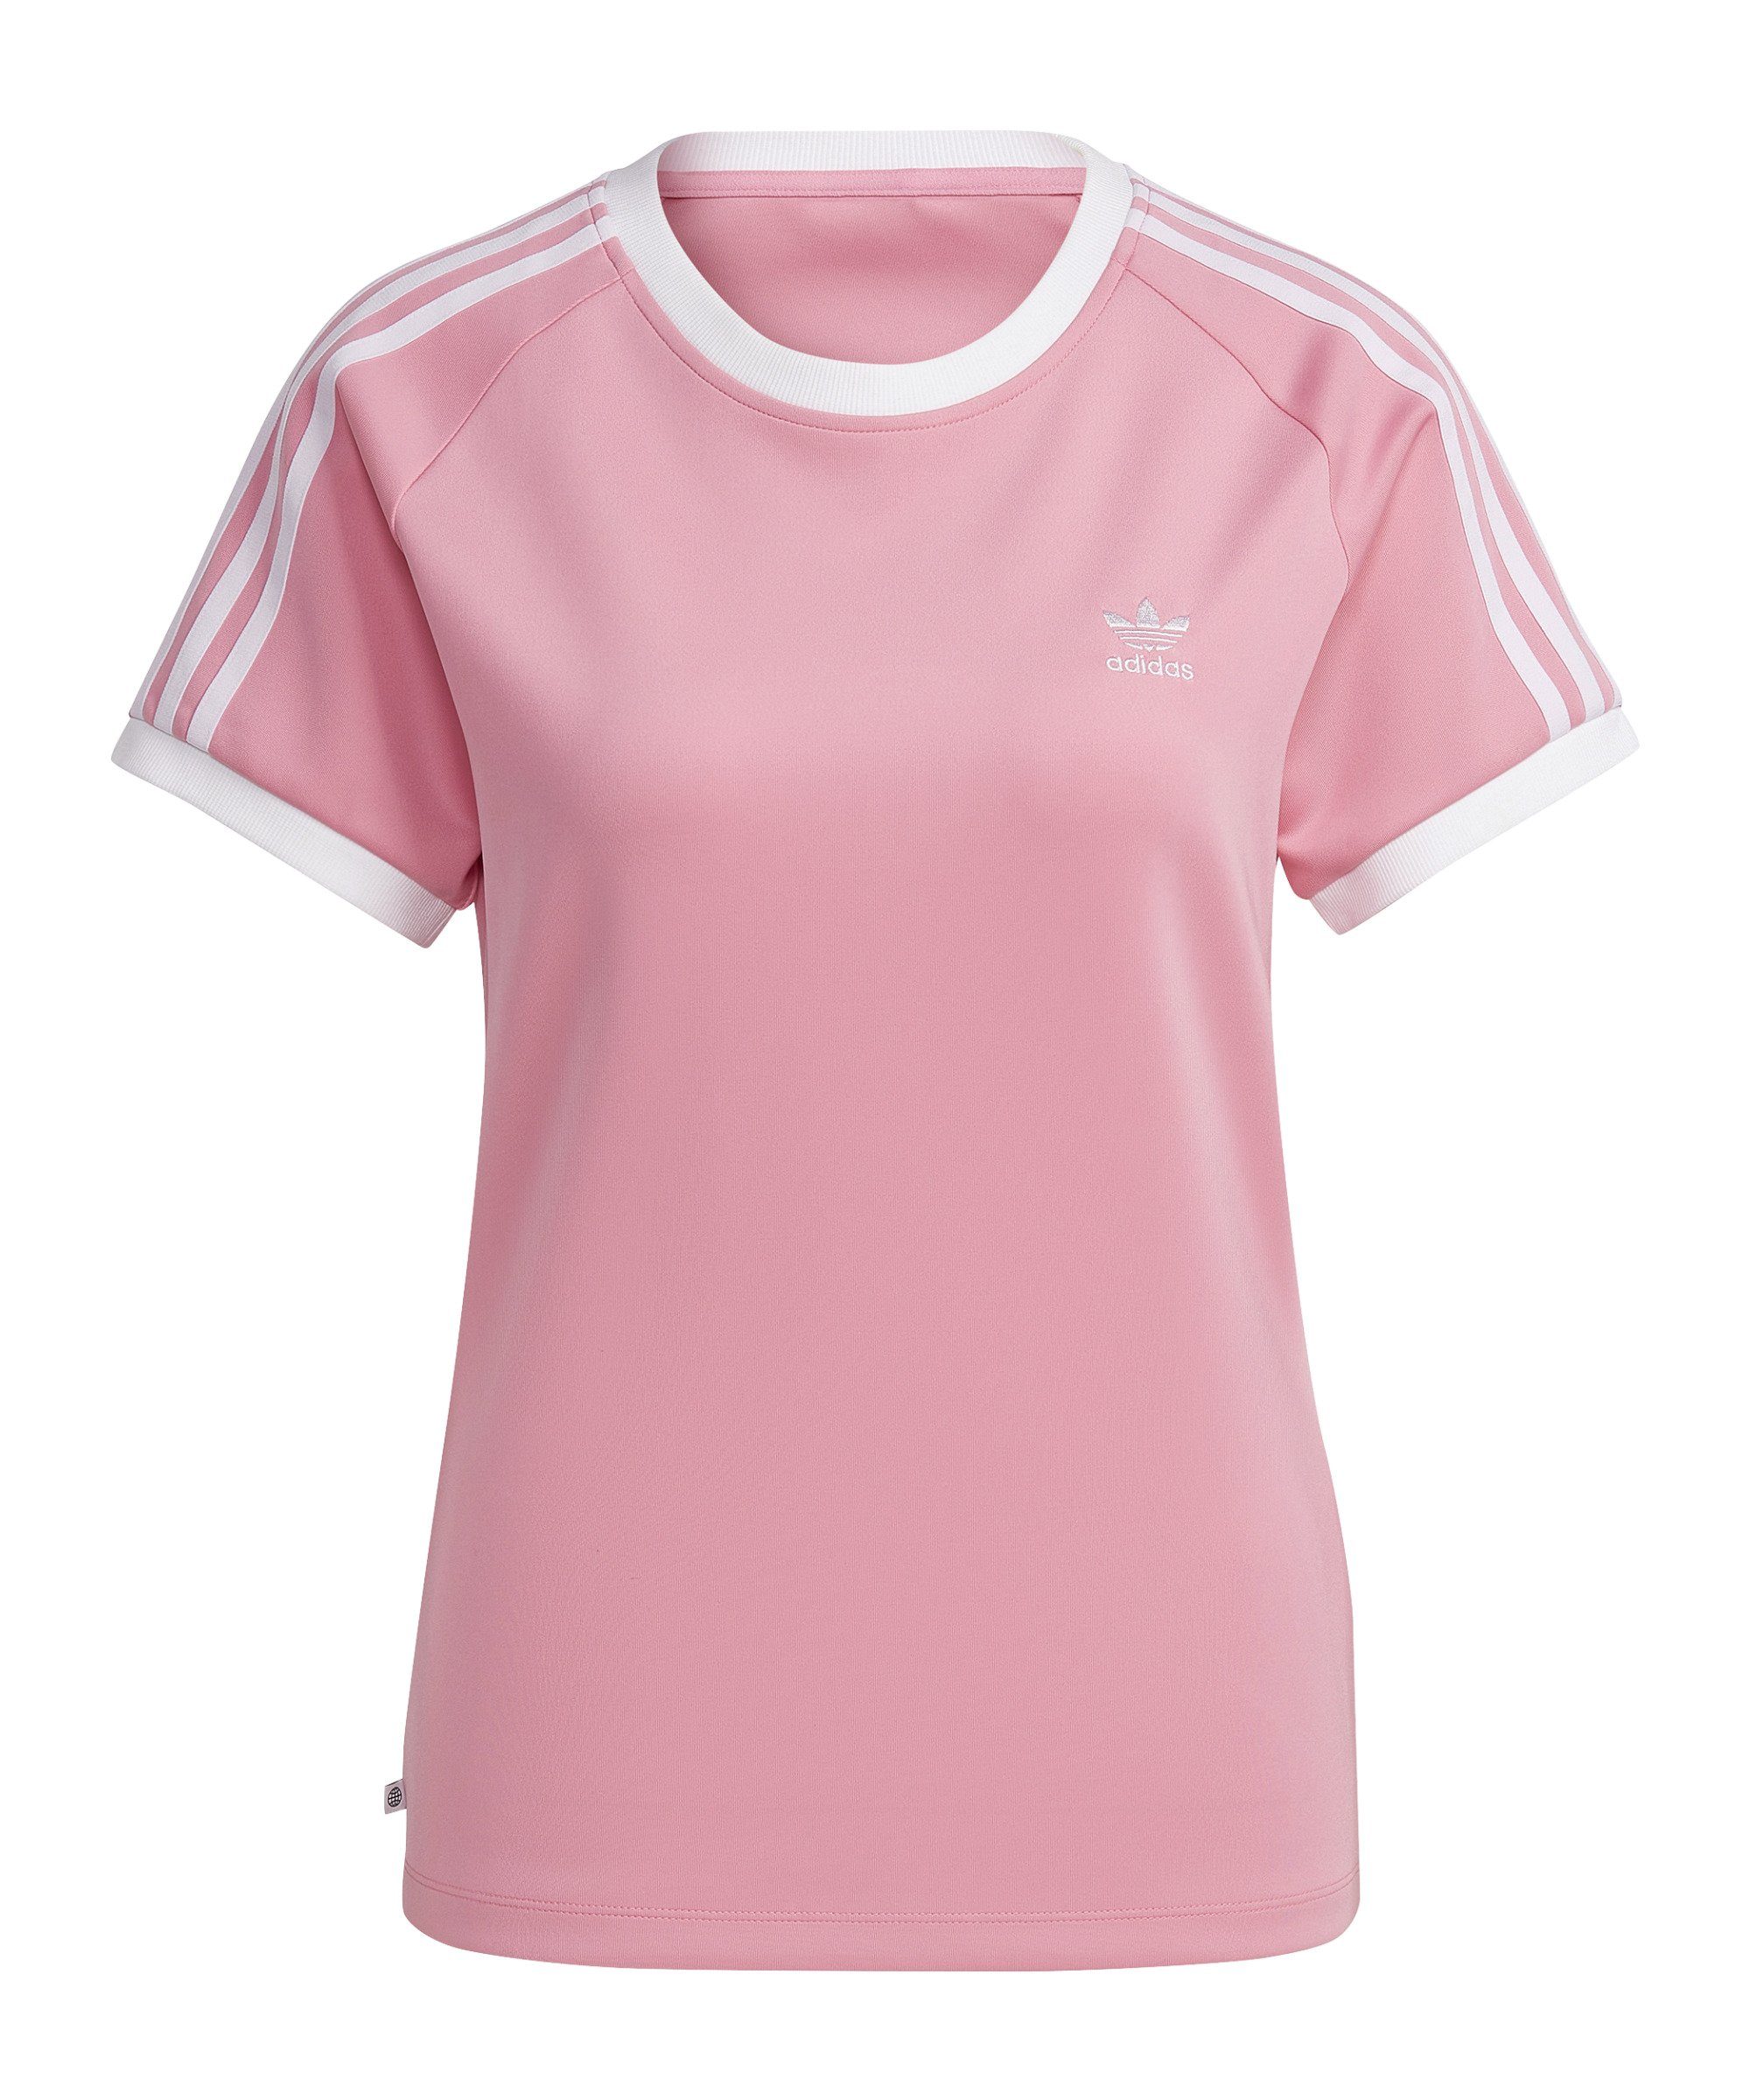 Originals T-Shirt adidas rosa Damen default 3S Slim T-Shirt